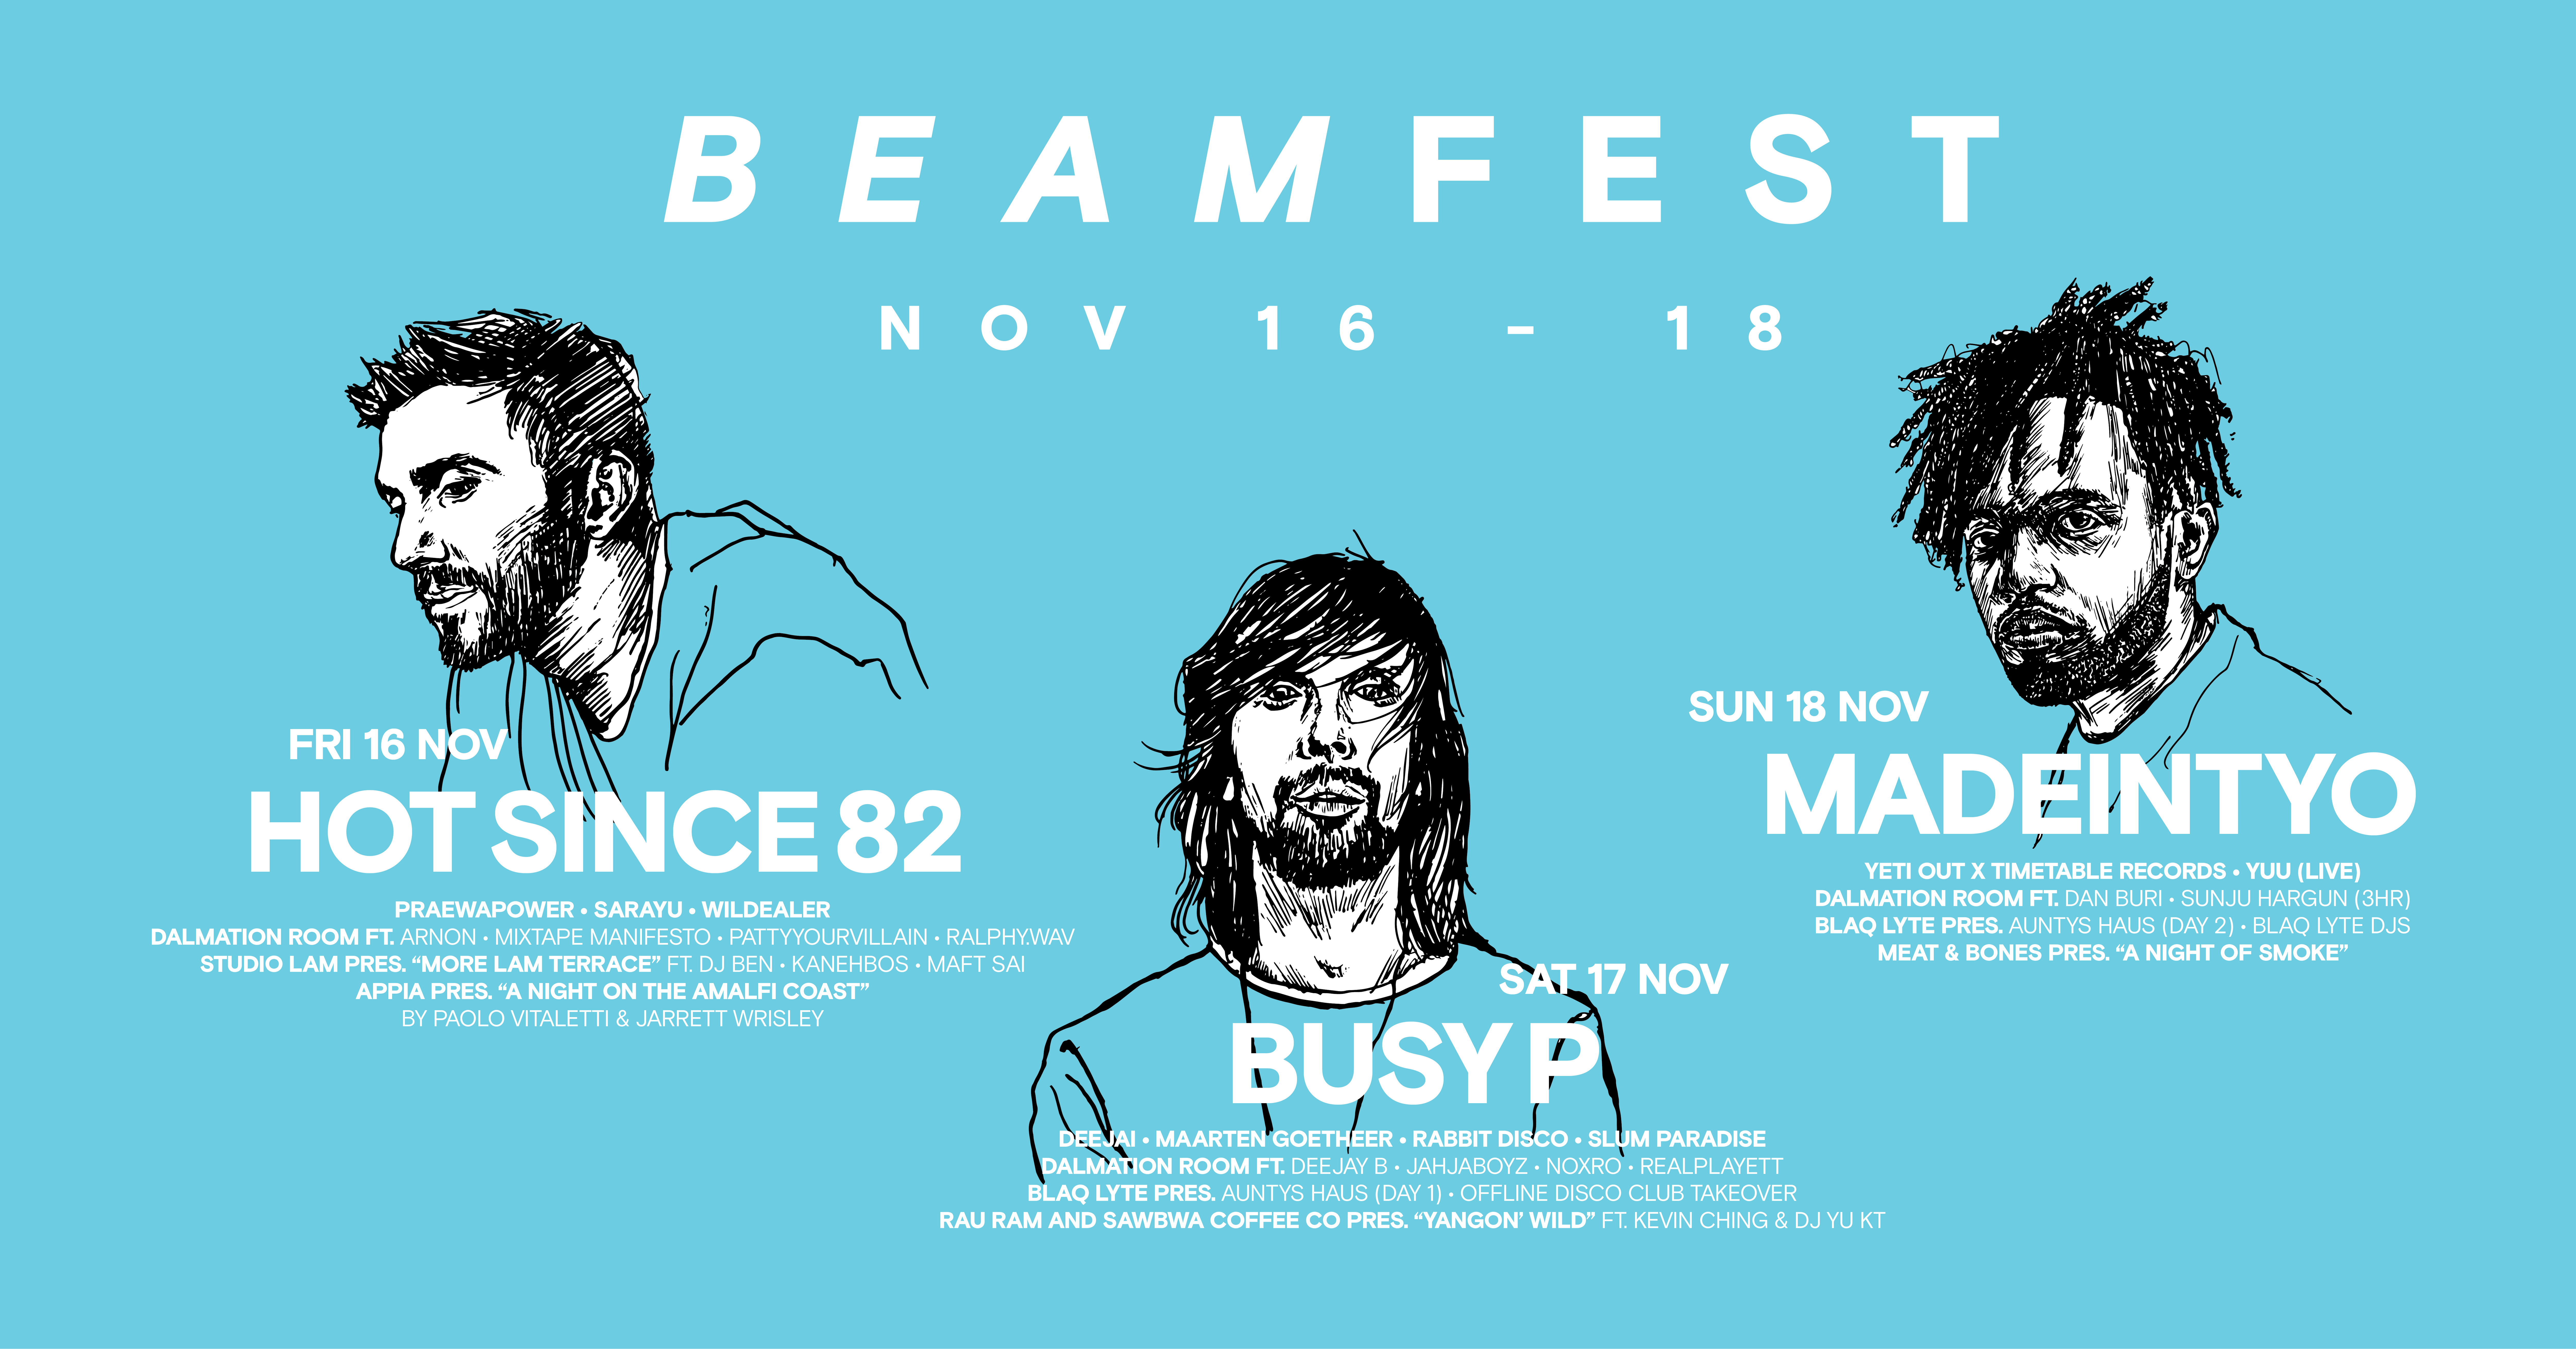 BEAMFEST 2018 กลับมาพร้อมกับความสนุก 16-18 พฤศจิกายนนี้